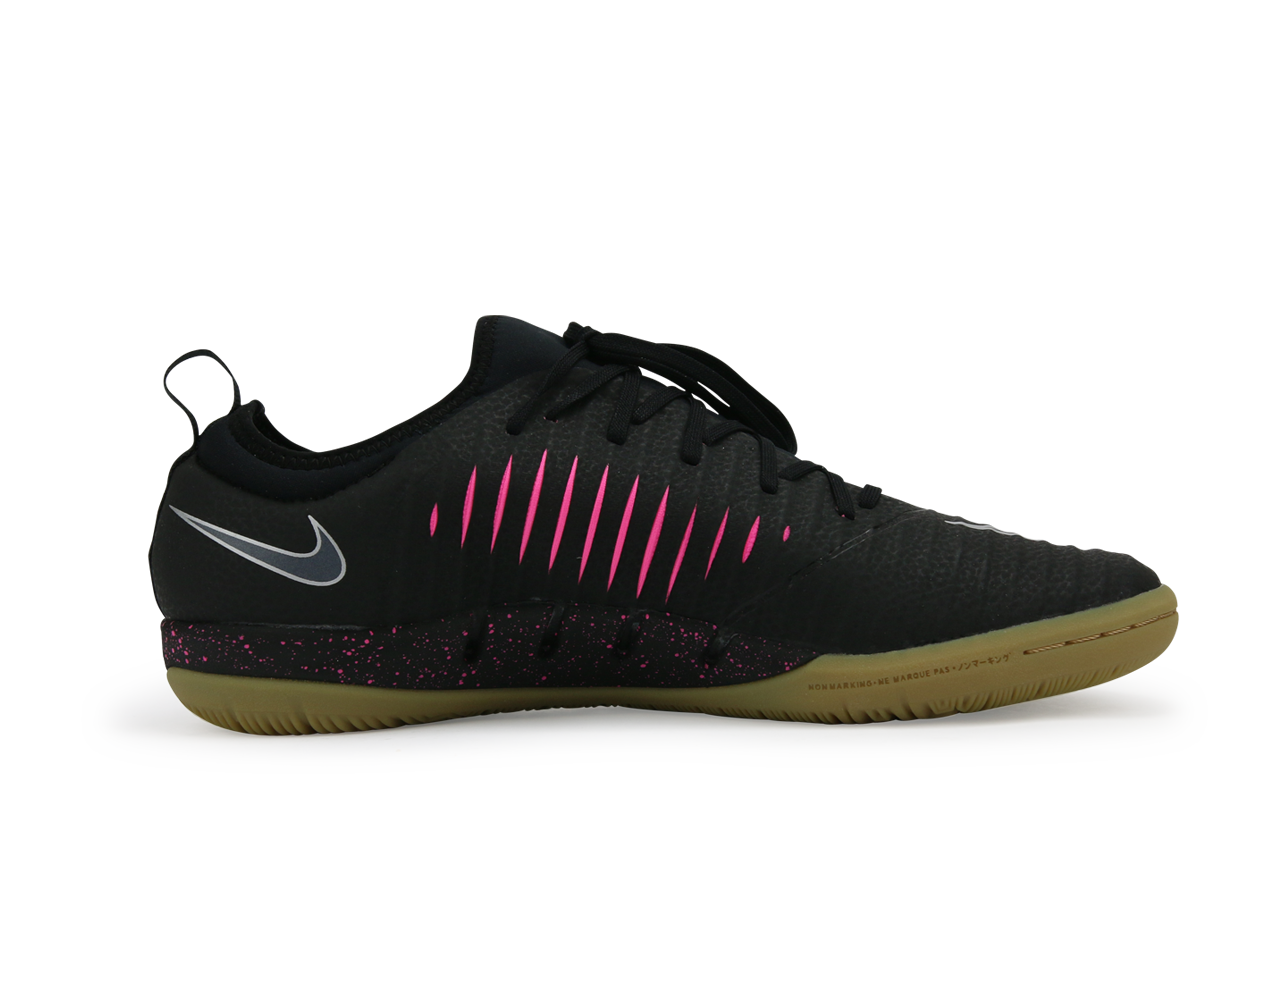 Nike Men's MercurialX Finale II Indoor Soccer Shoes /Black Pink/Blast Gum/Light Brown